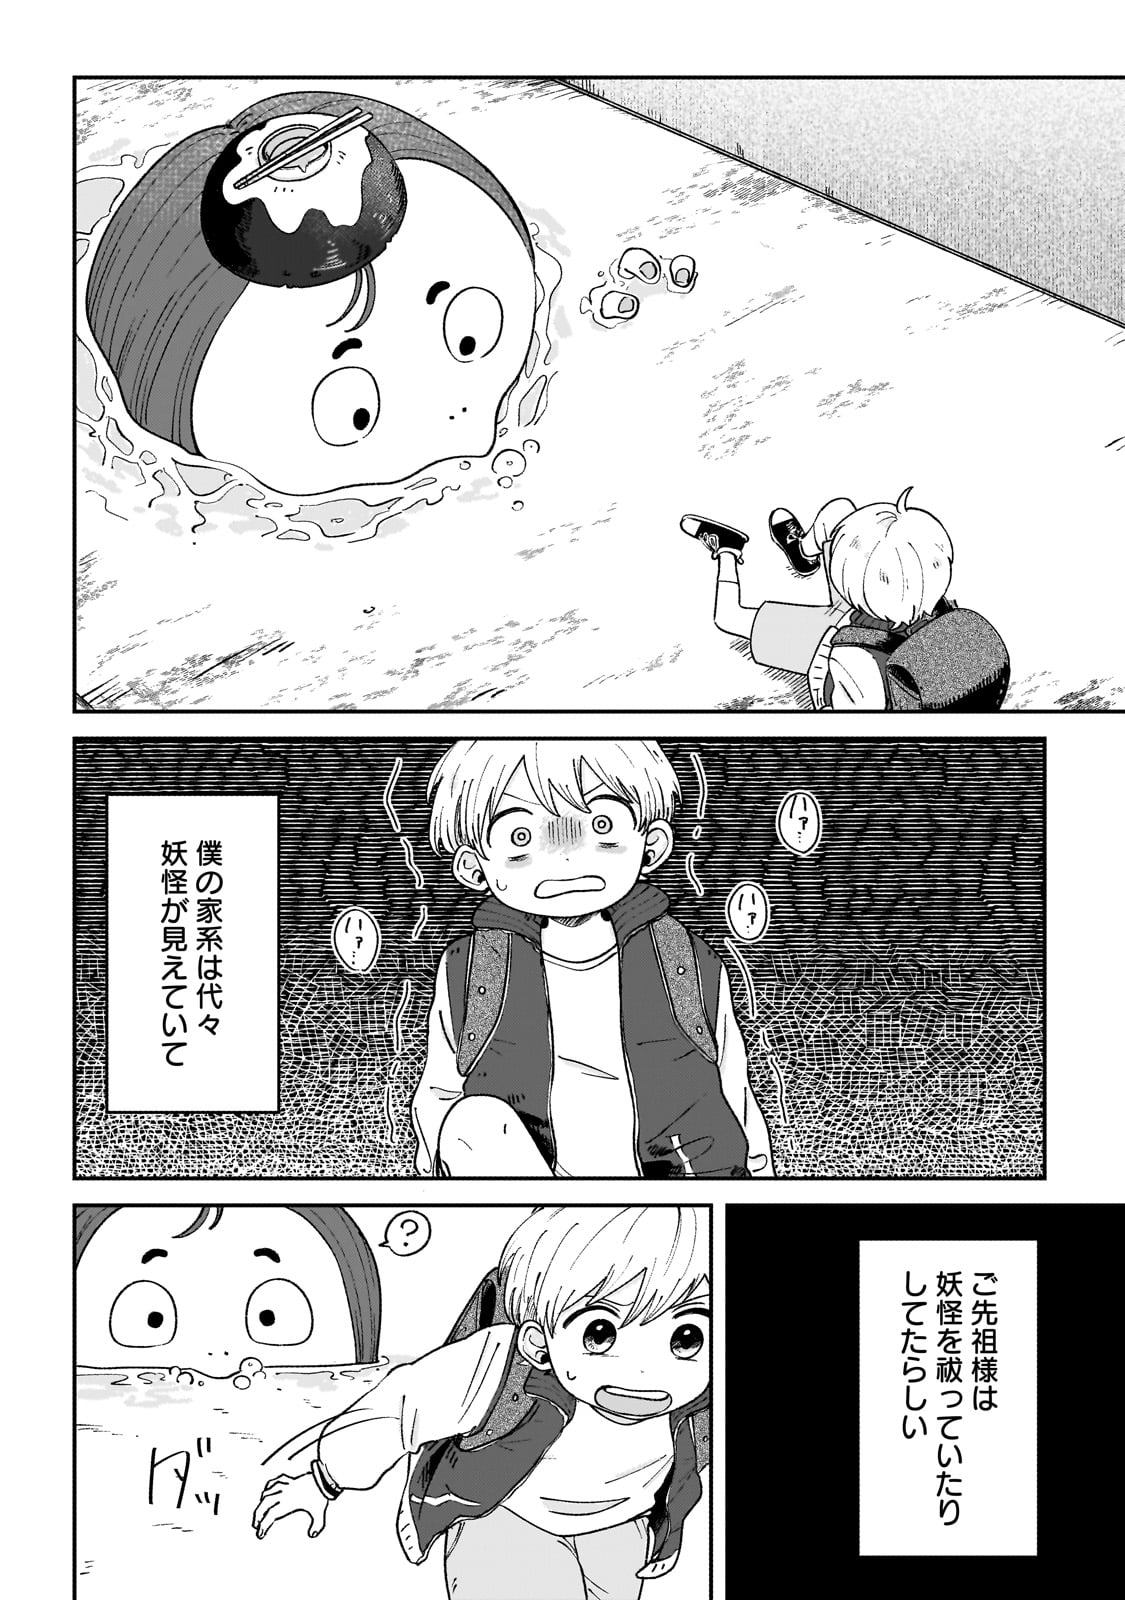 Boku to Ayakashi no 365 Nichi - Chapter 1 - Page 4